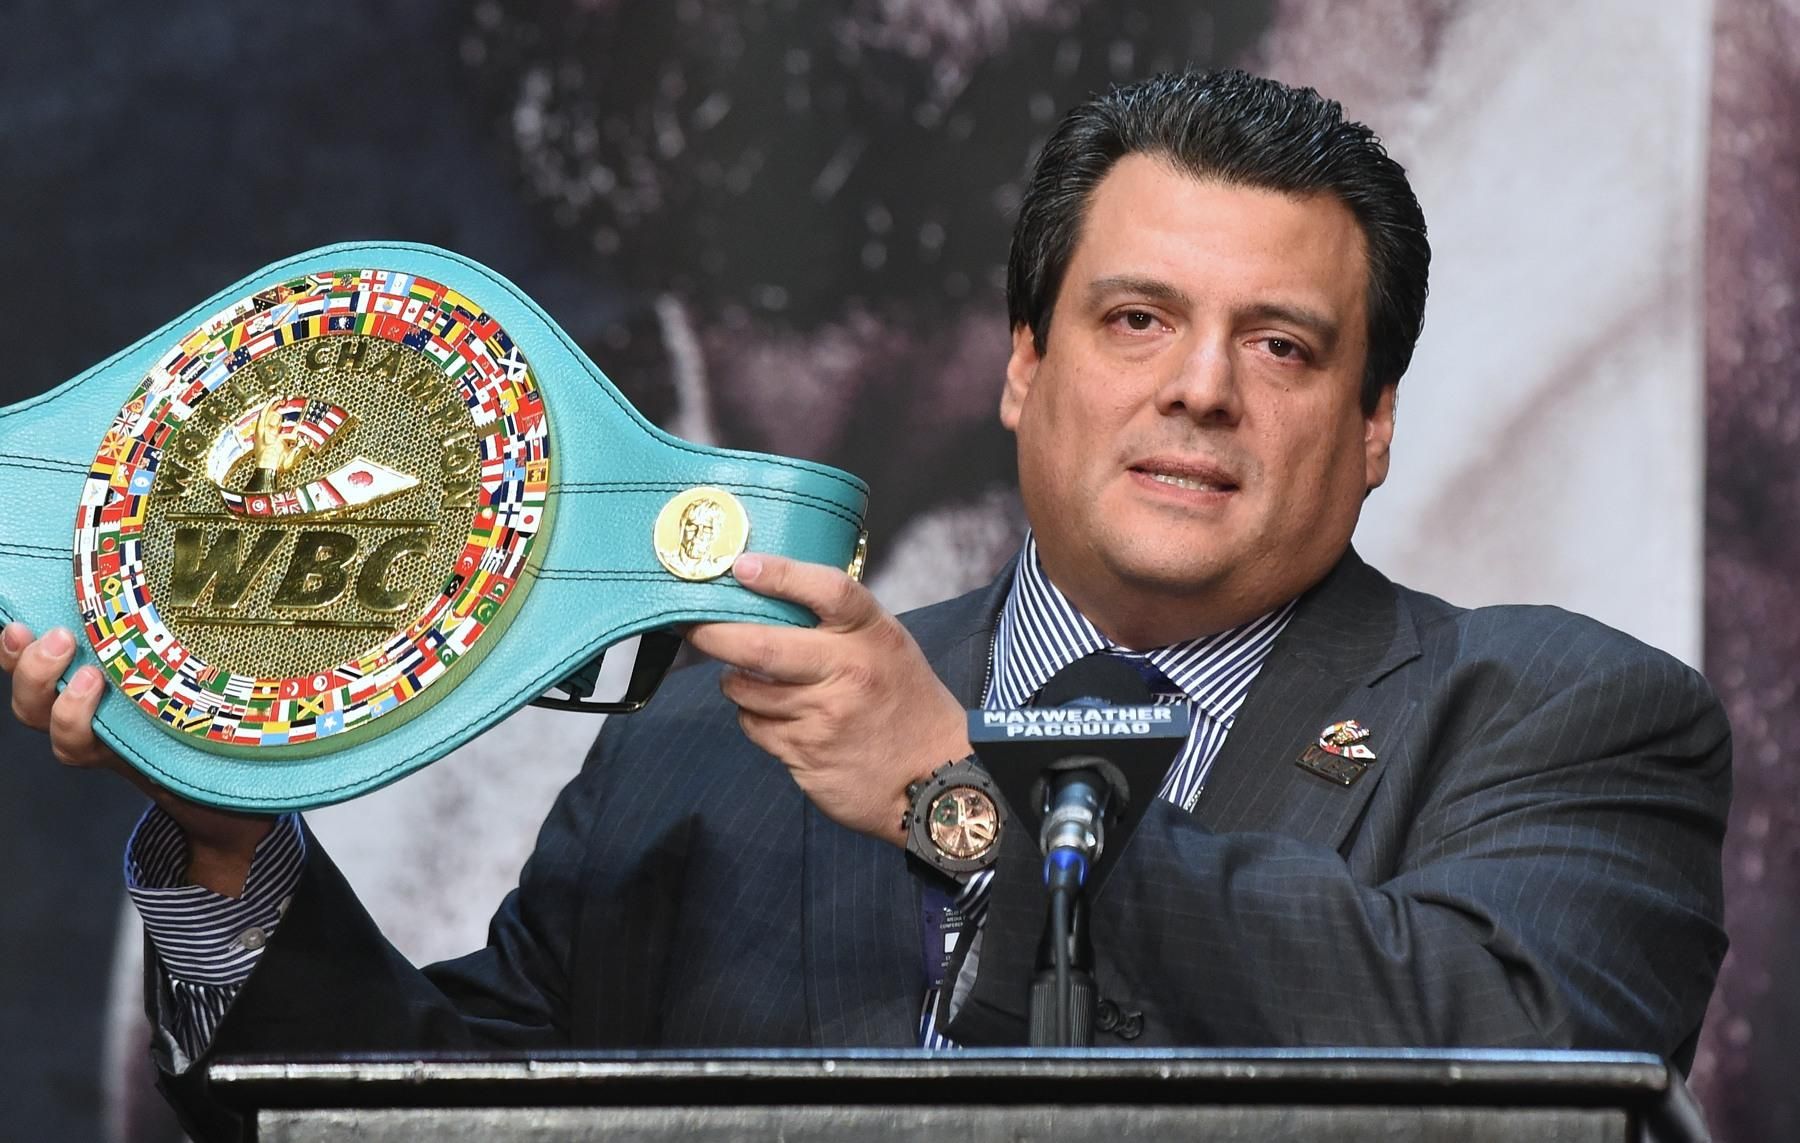 Президент WBC назвав Україну майбутньою боксерською країною